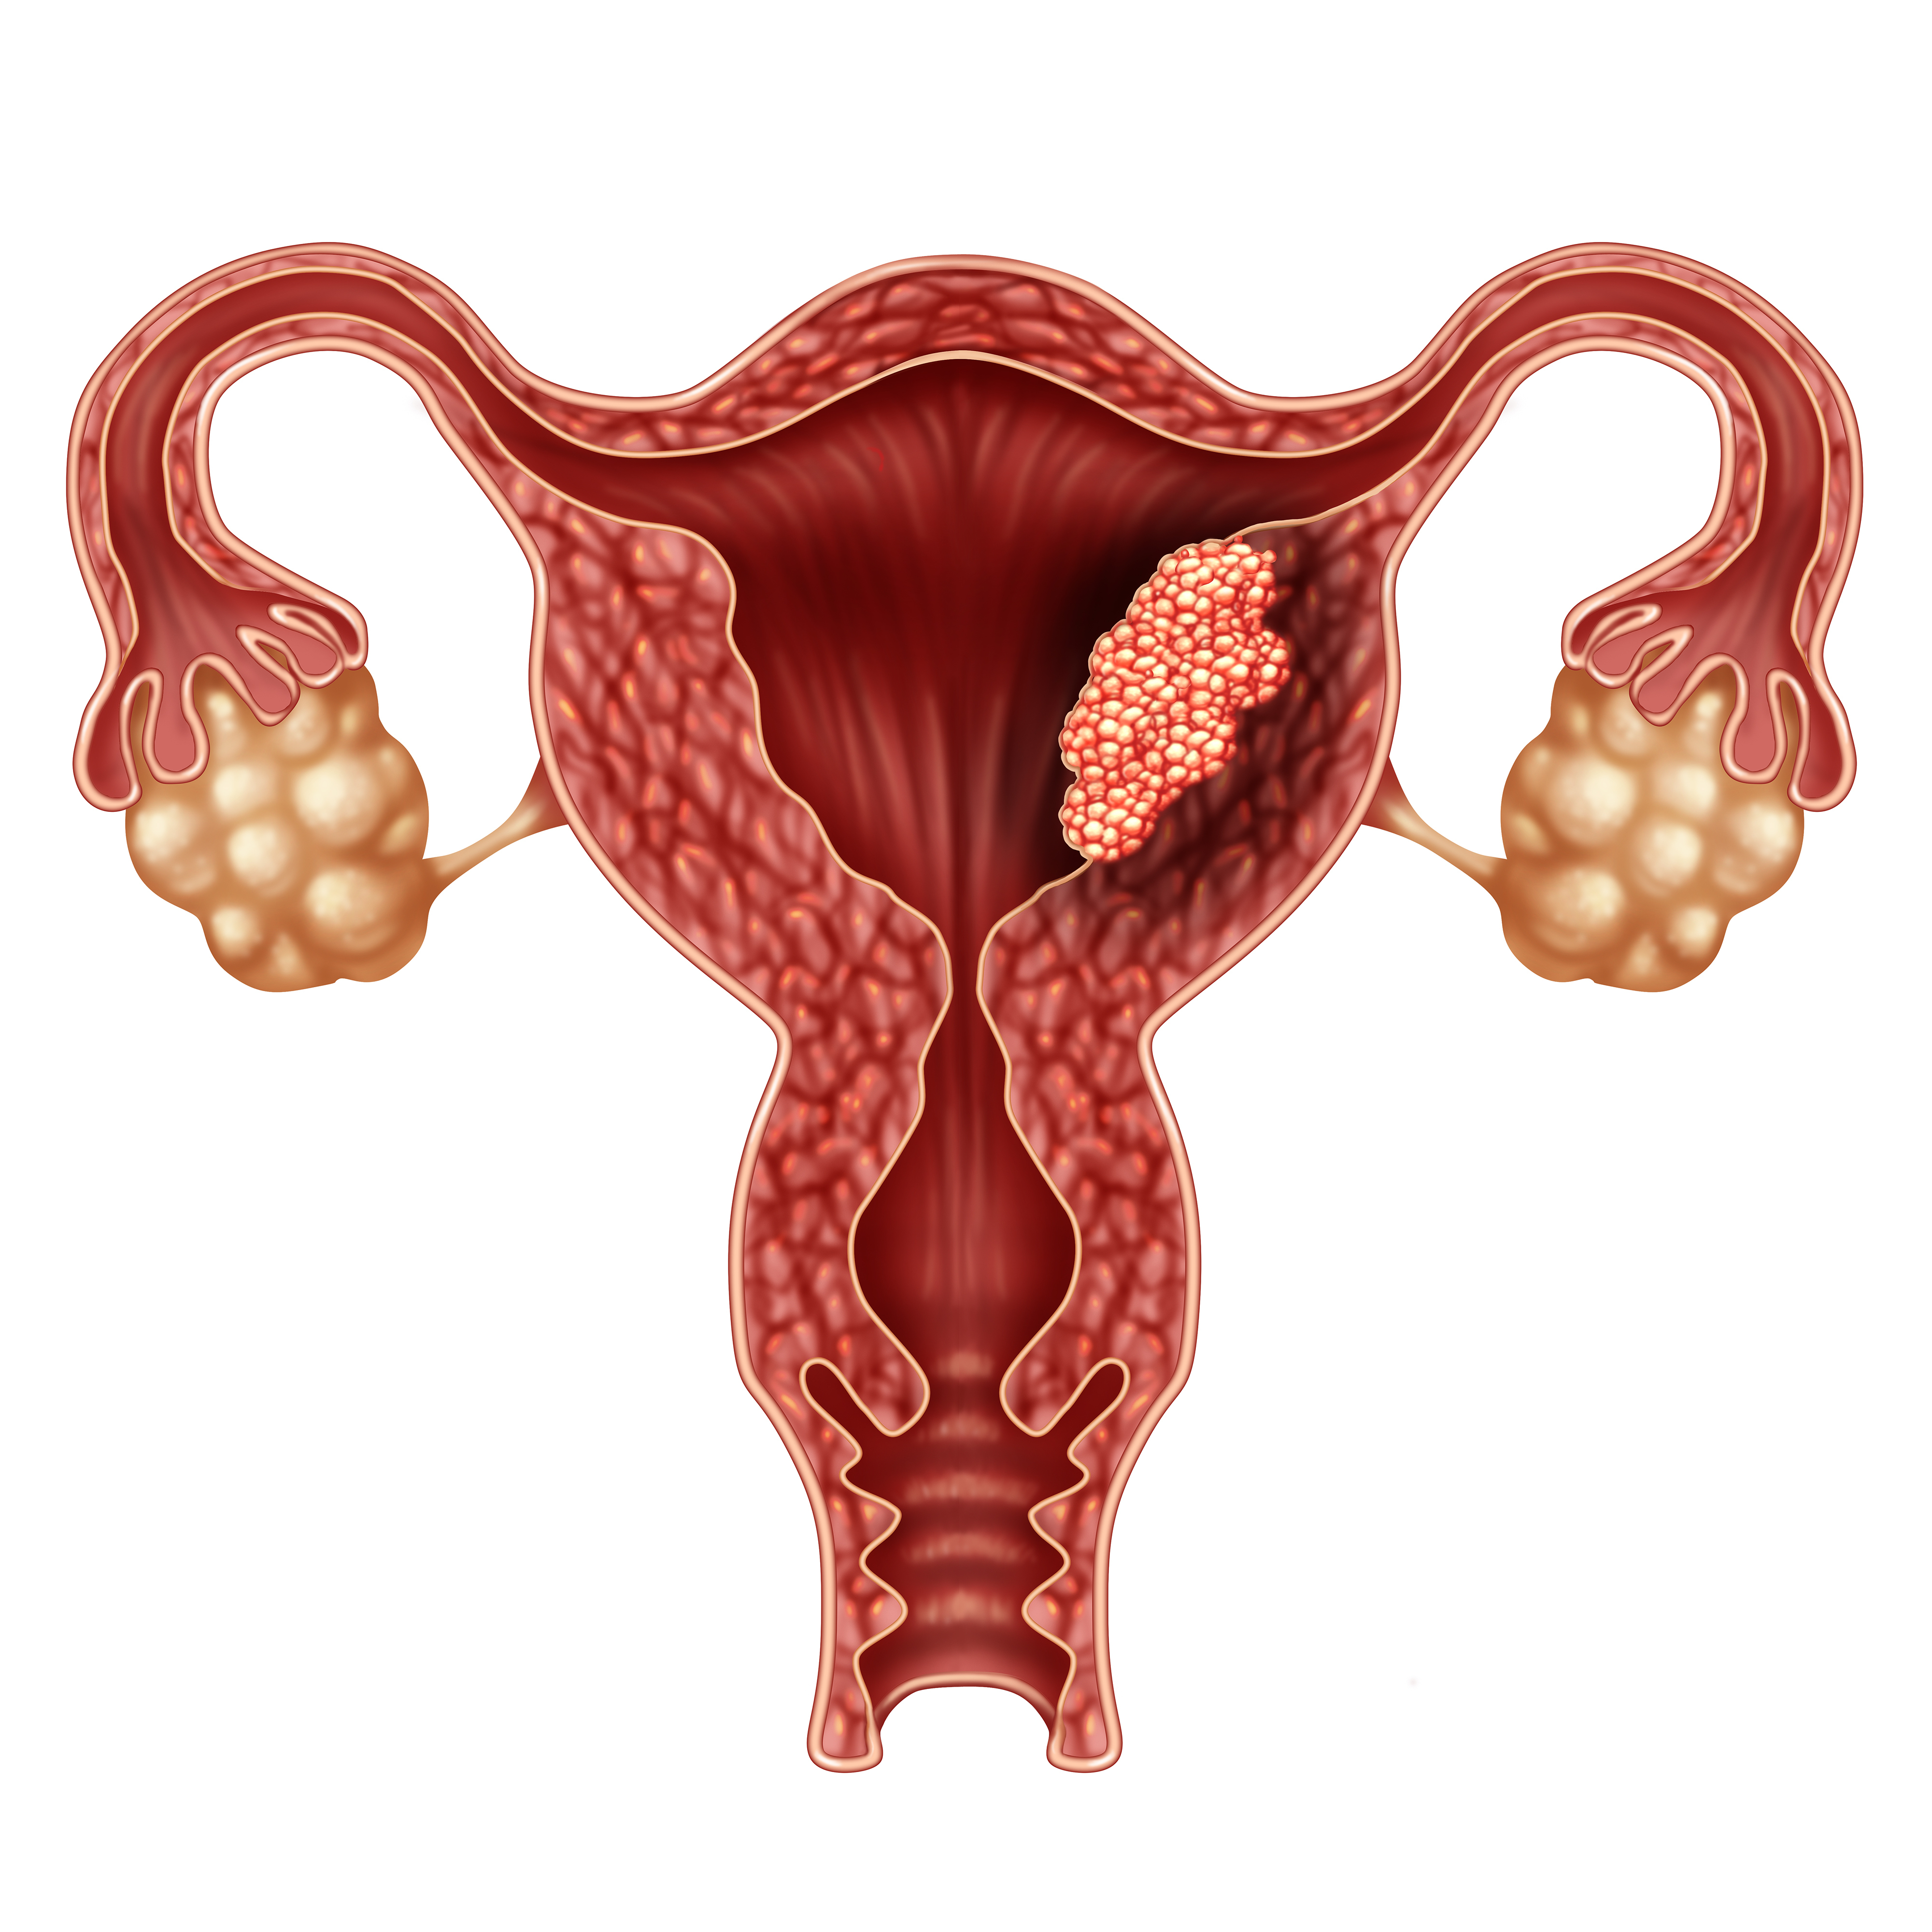 Рак тела матки, развивающийся из клеток ее слизистой оболочки — эндометрия